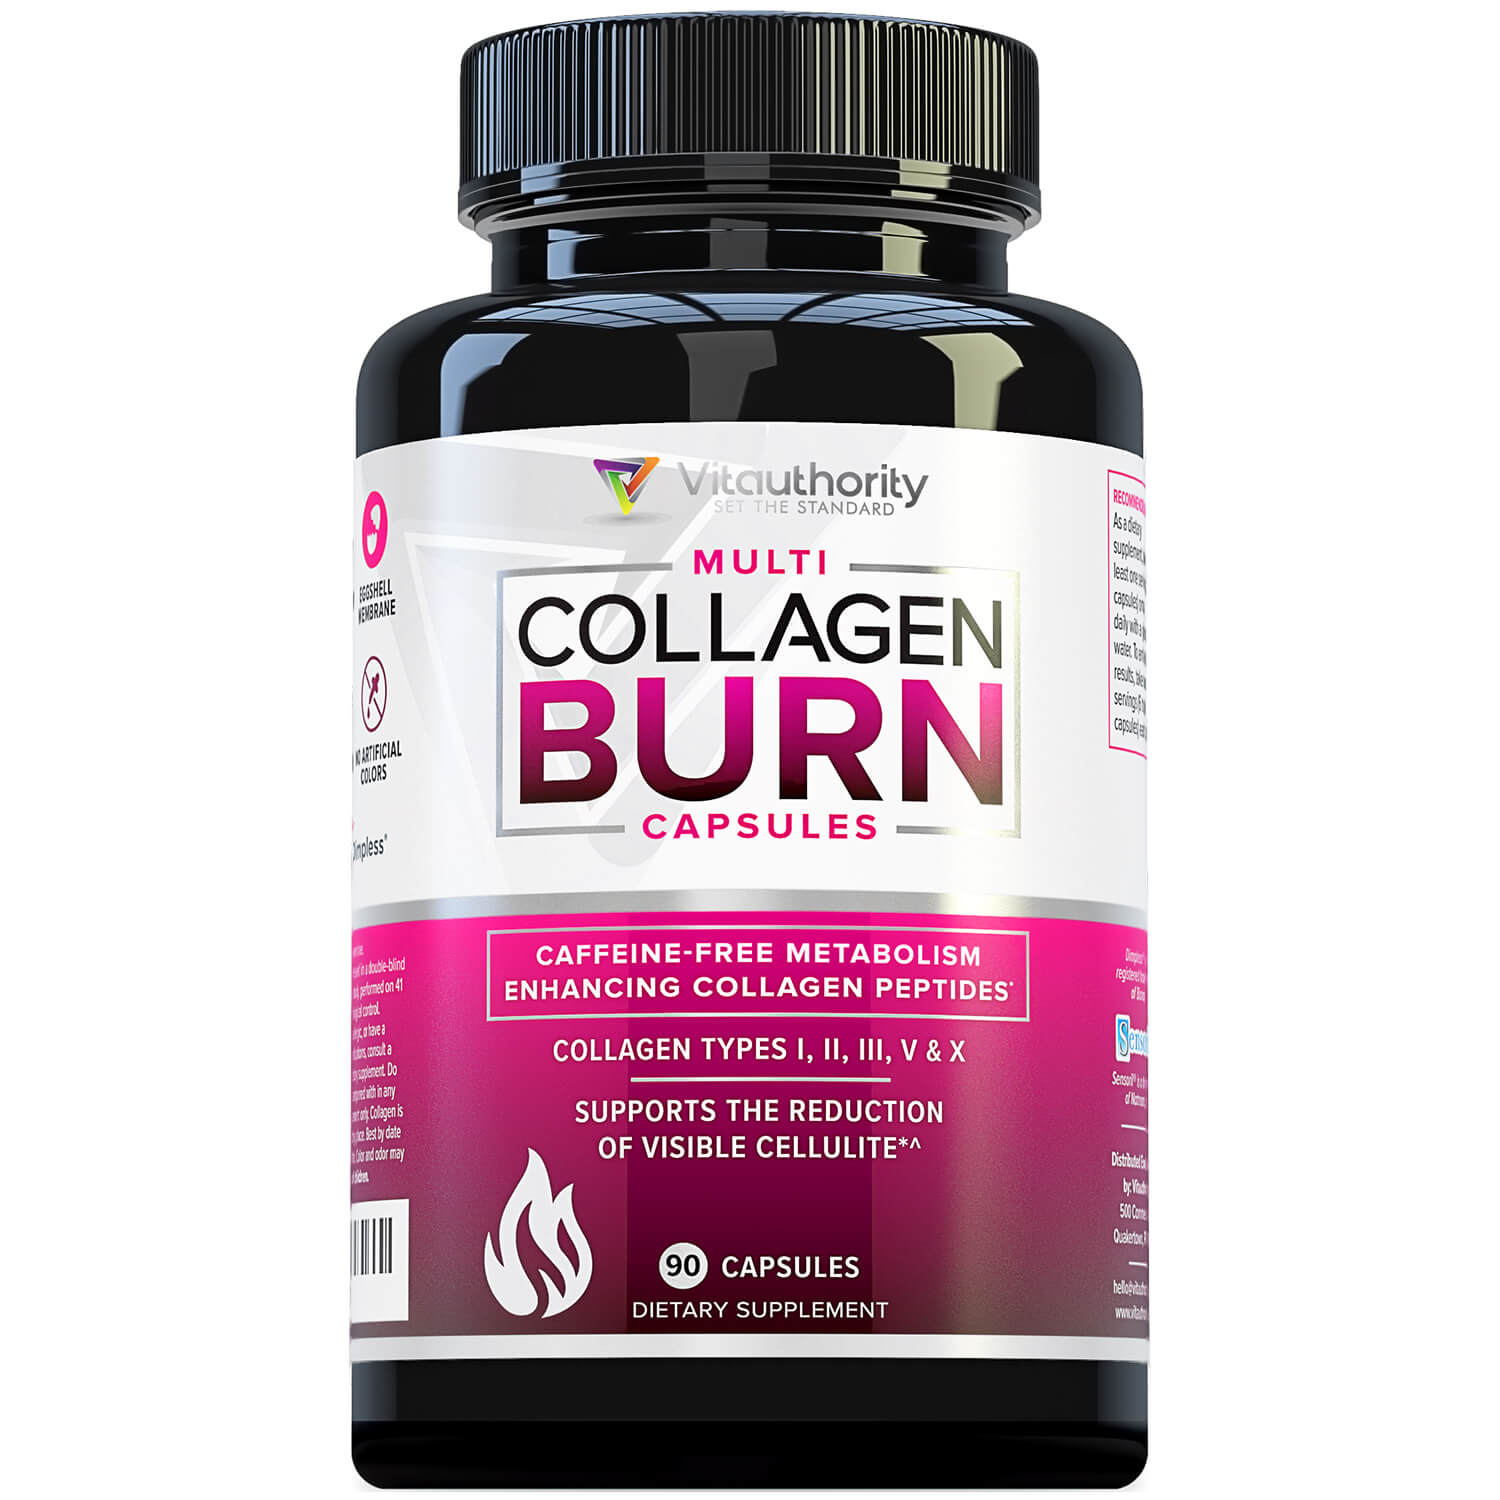 2 Bottles of Multi Collagen Burn Capsules